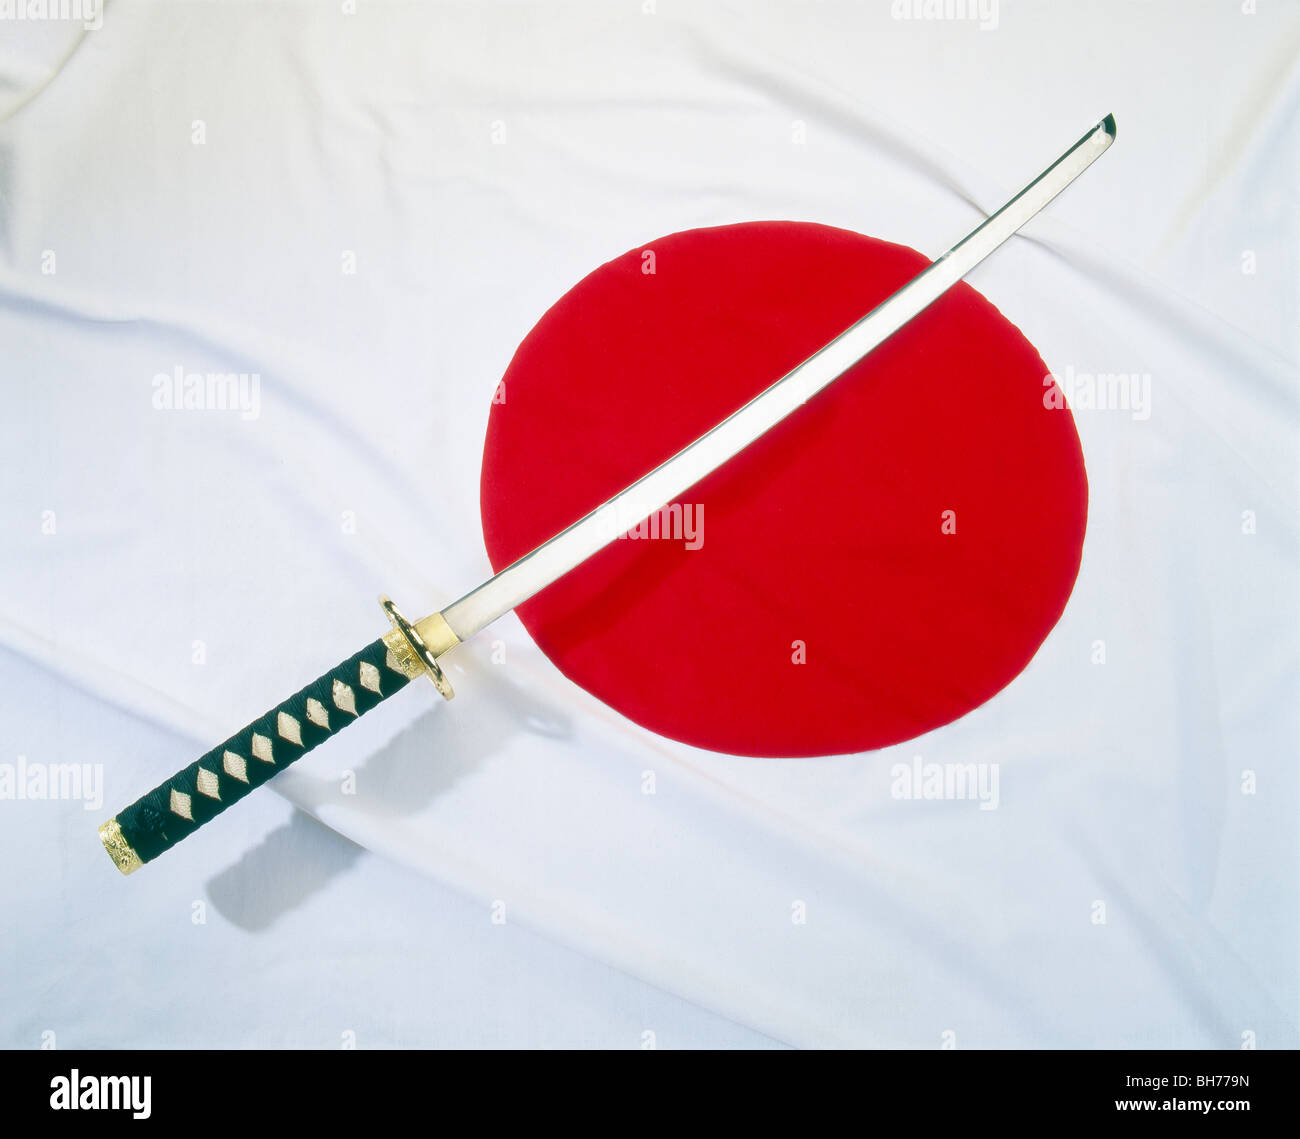 A samurai sword on a japanese flag Stock Photo